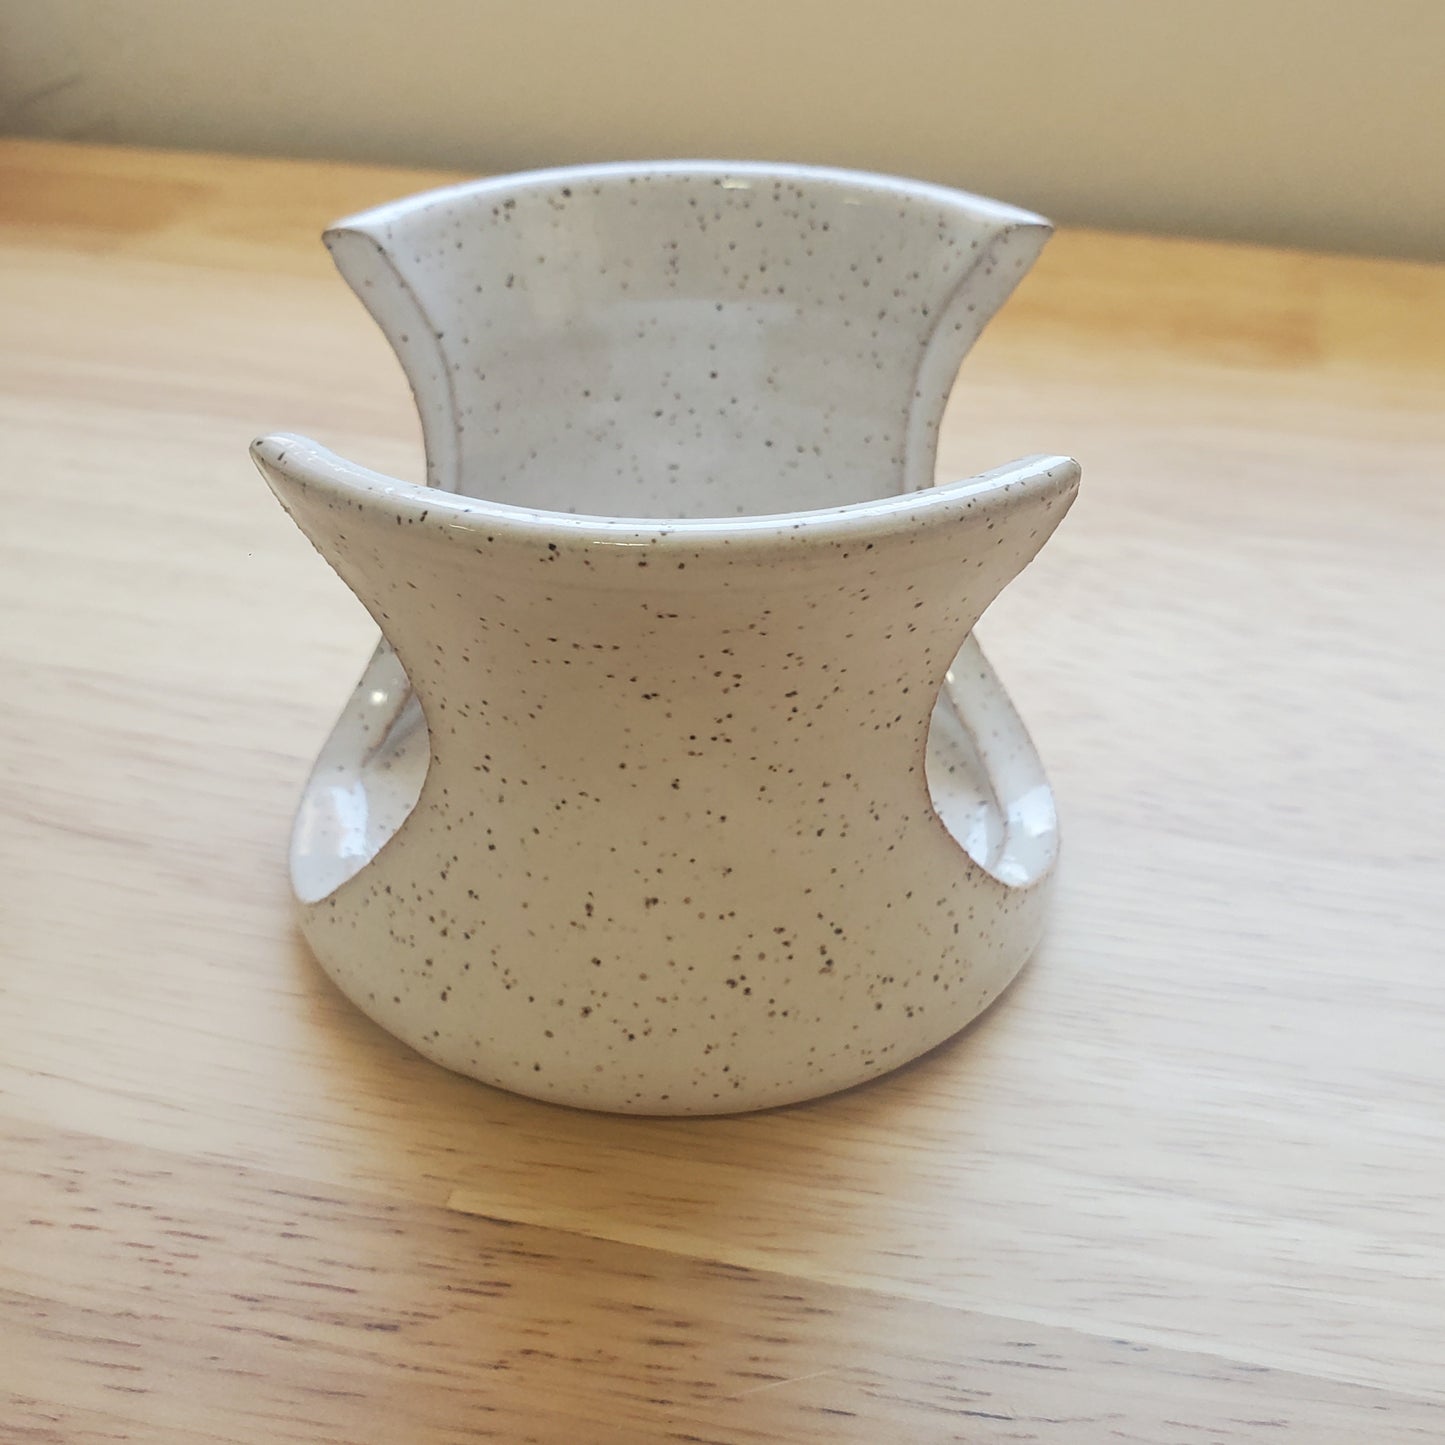 Handmade Ceramic Sponge Holder